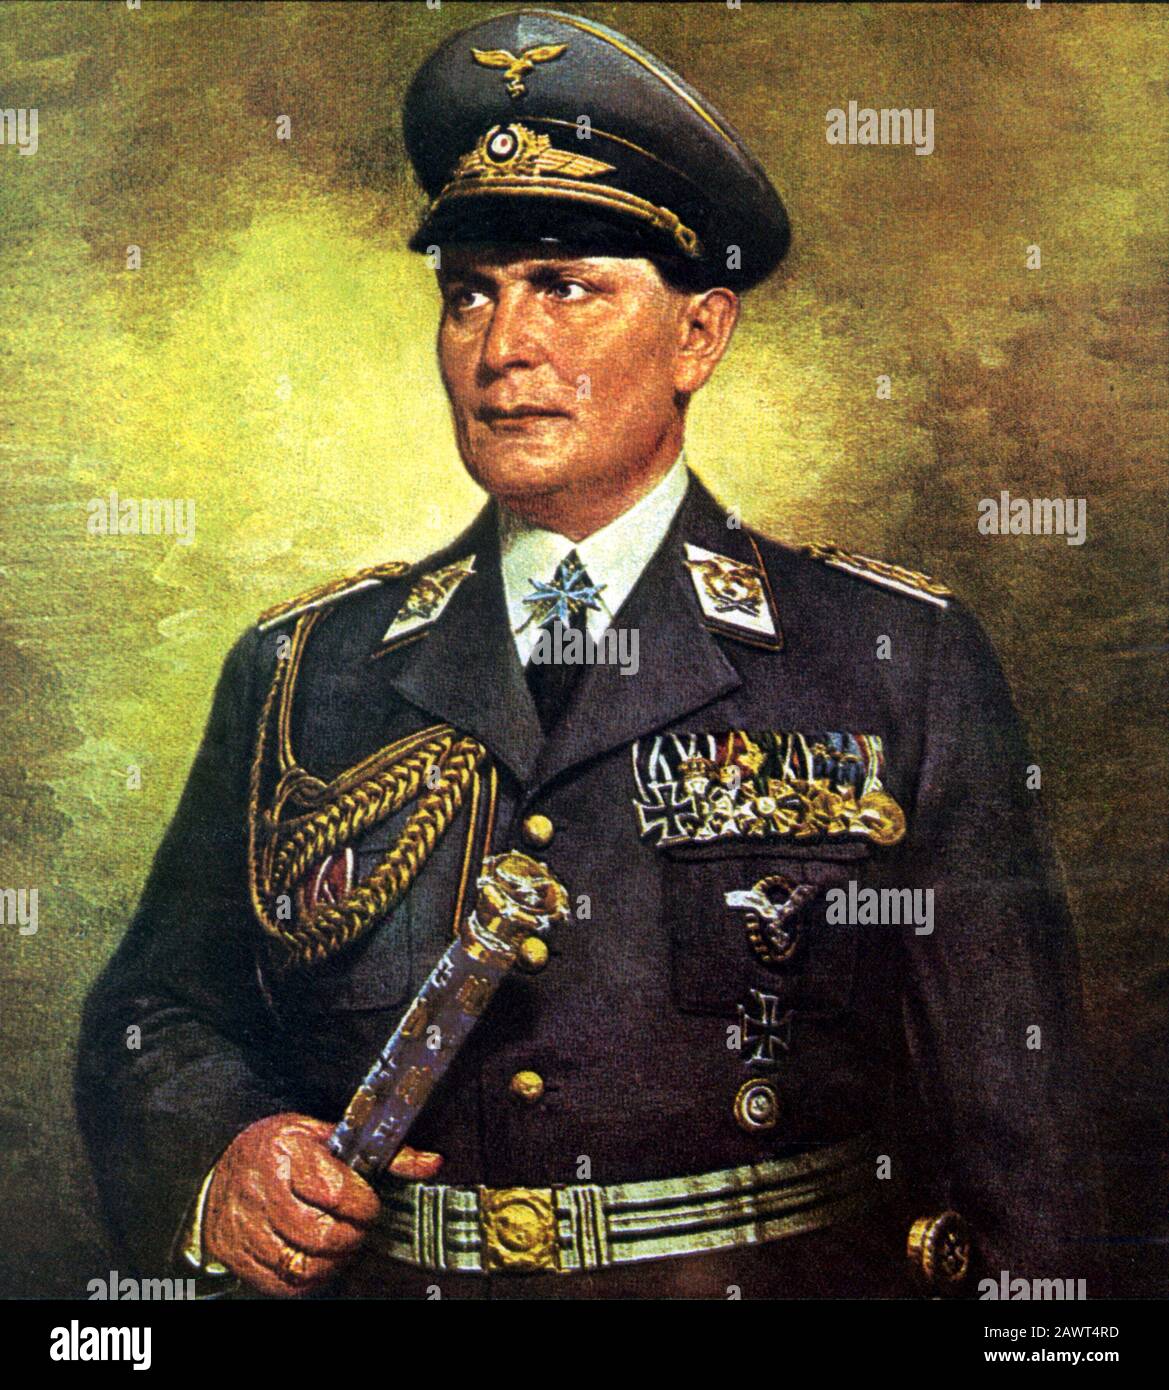 Der deutsche Feldmarchall HERMANN GÖRING ( 1893 - 1946 ) , Kommandant der Luftwaffe - NAZI - NAZISMUS - NAZIST - NAZISTA - NAZISMO - WWII - Seconda guer Stockfoto